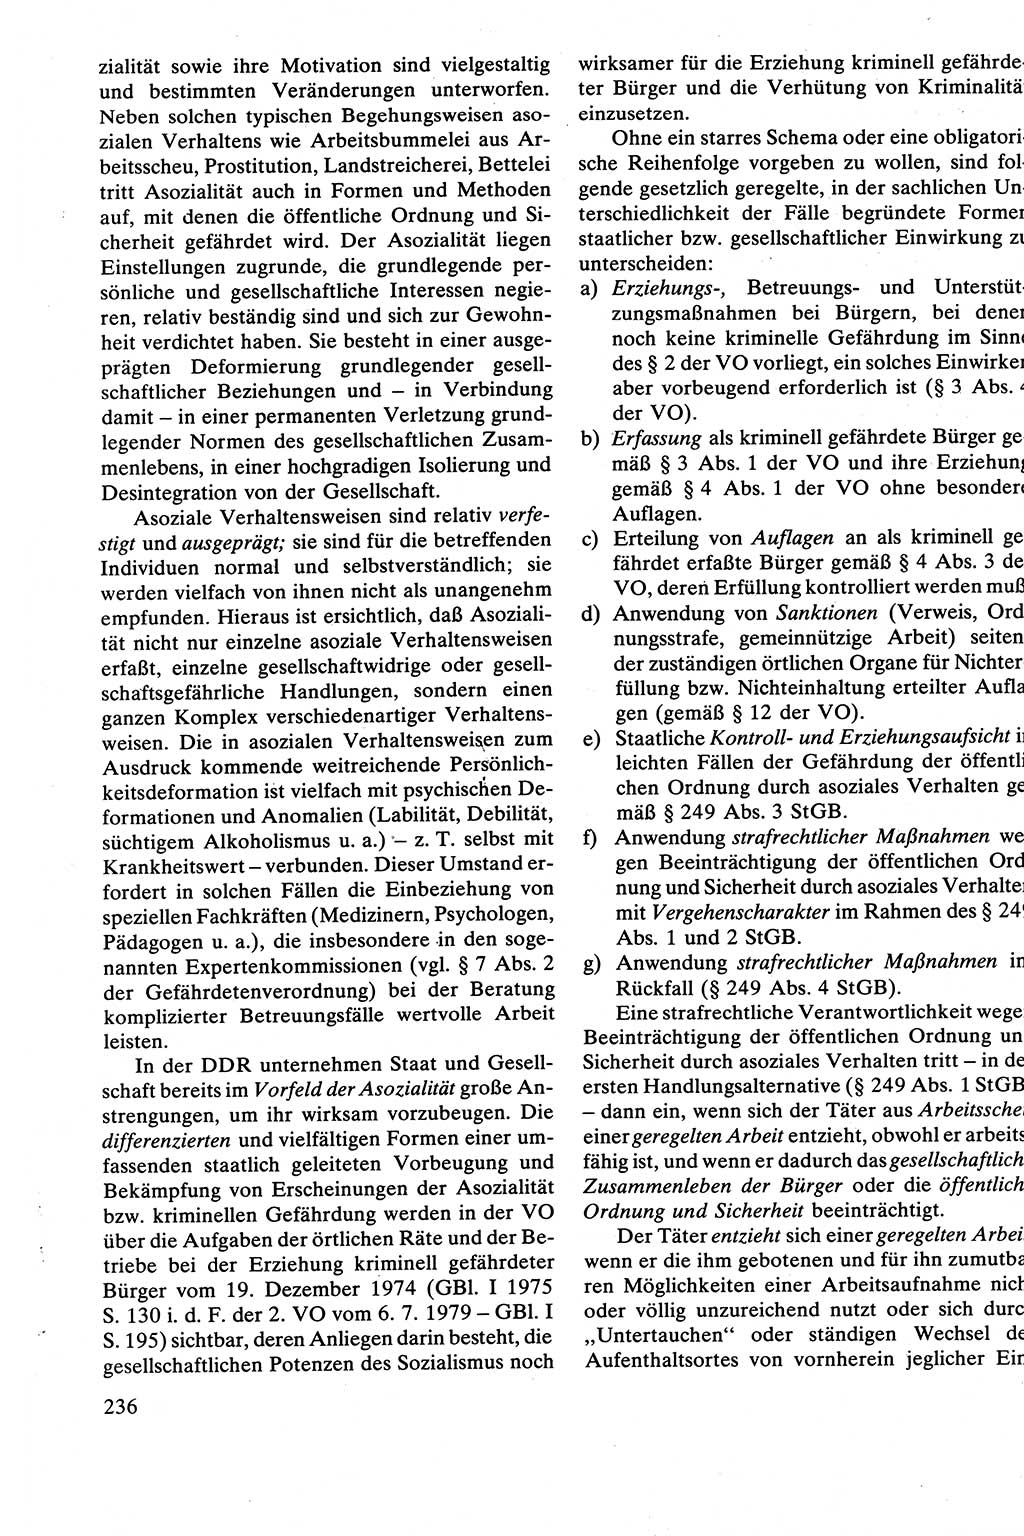 Strafrecht [Deutsche Demokratische Republik (DDR)], Besonderer Teil, Lehrbuch 1981, Seite 236 (Strafr. DDR BT Lb. 1981, S. 236)